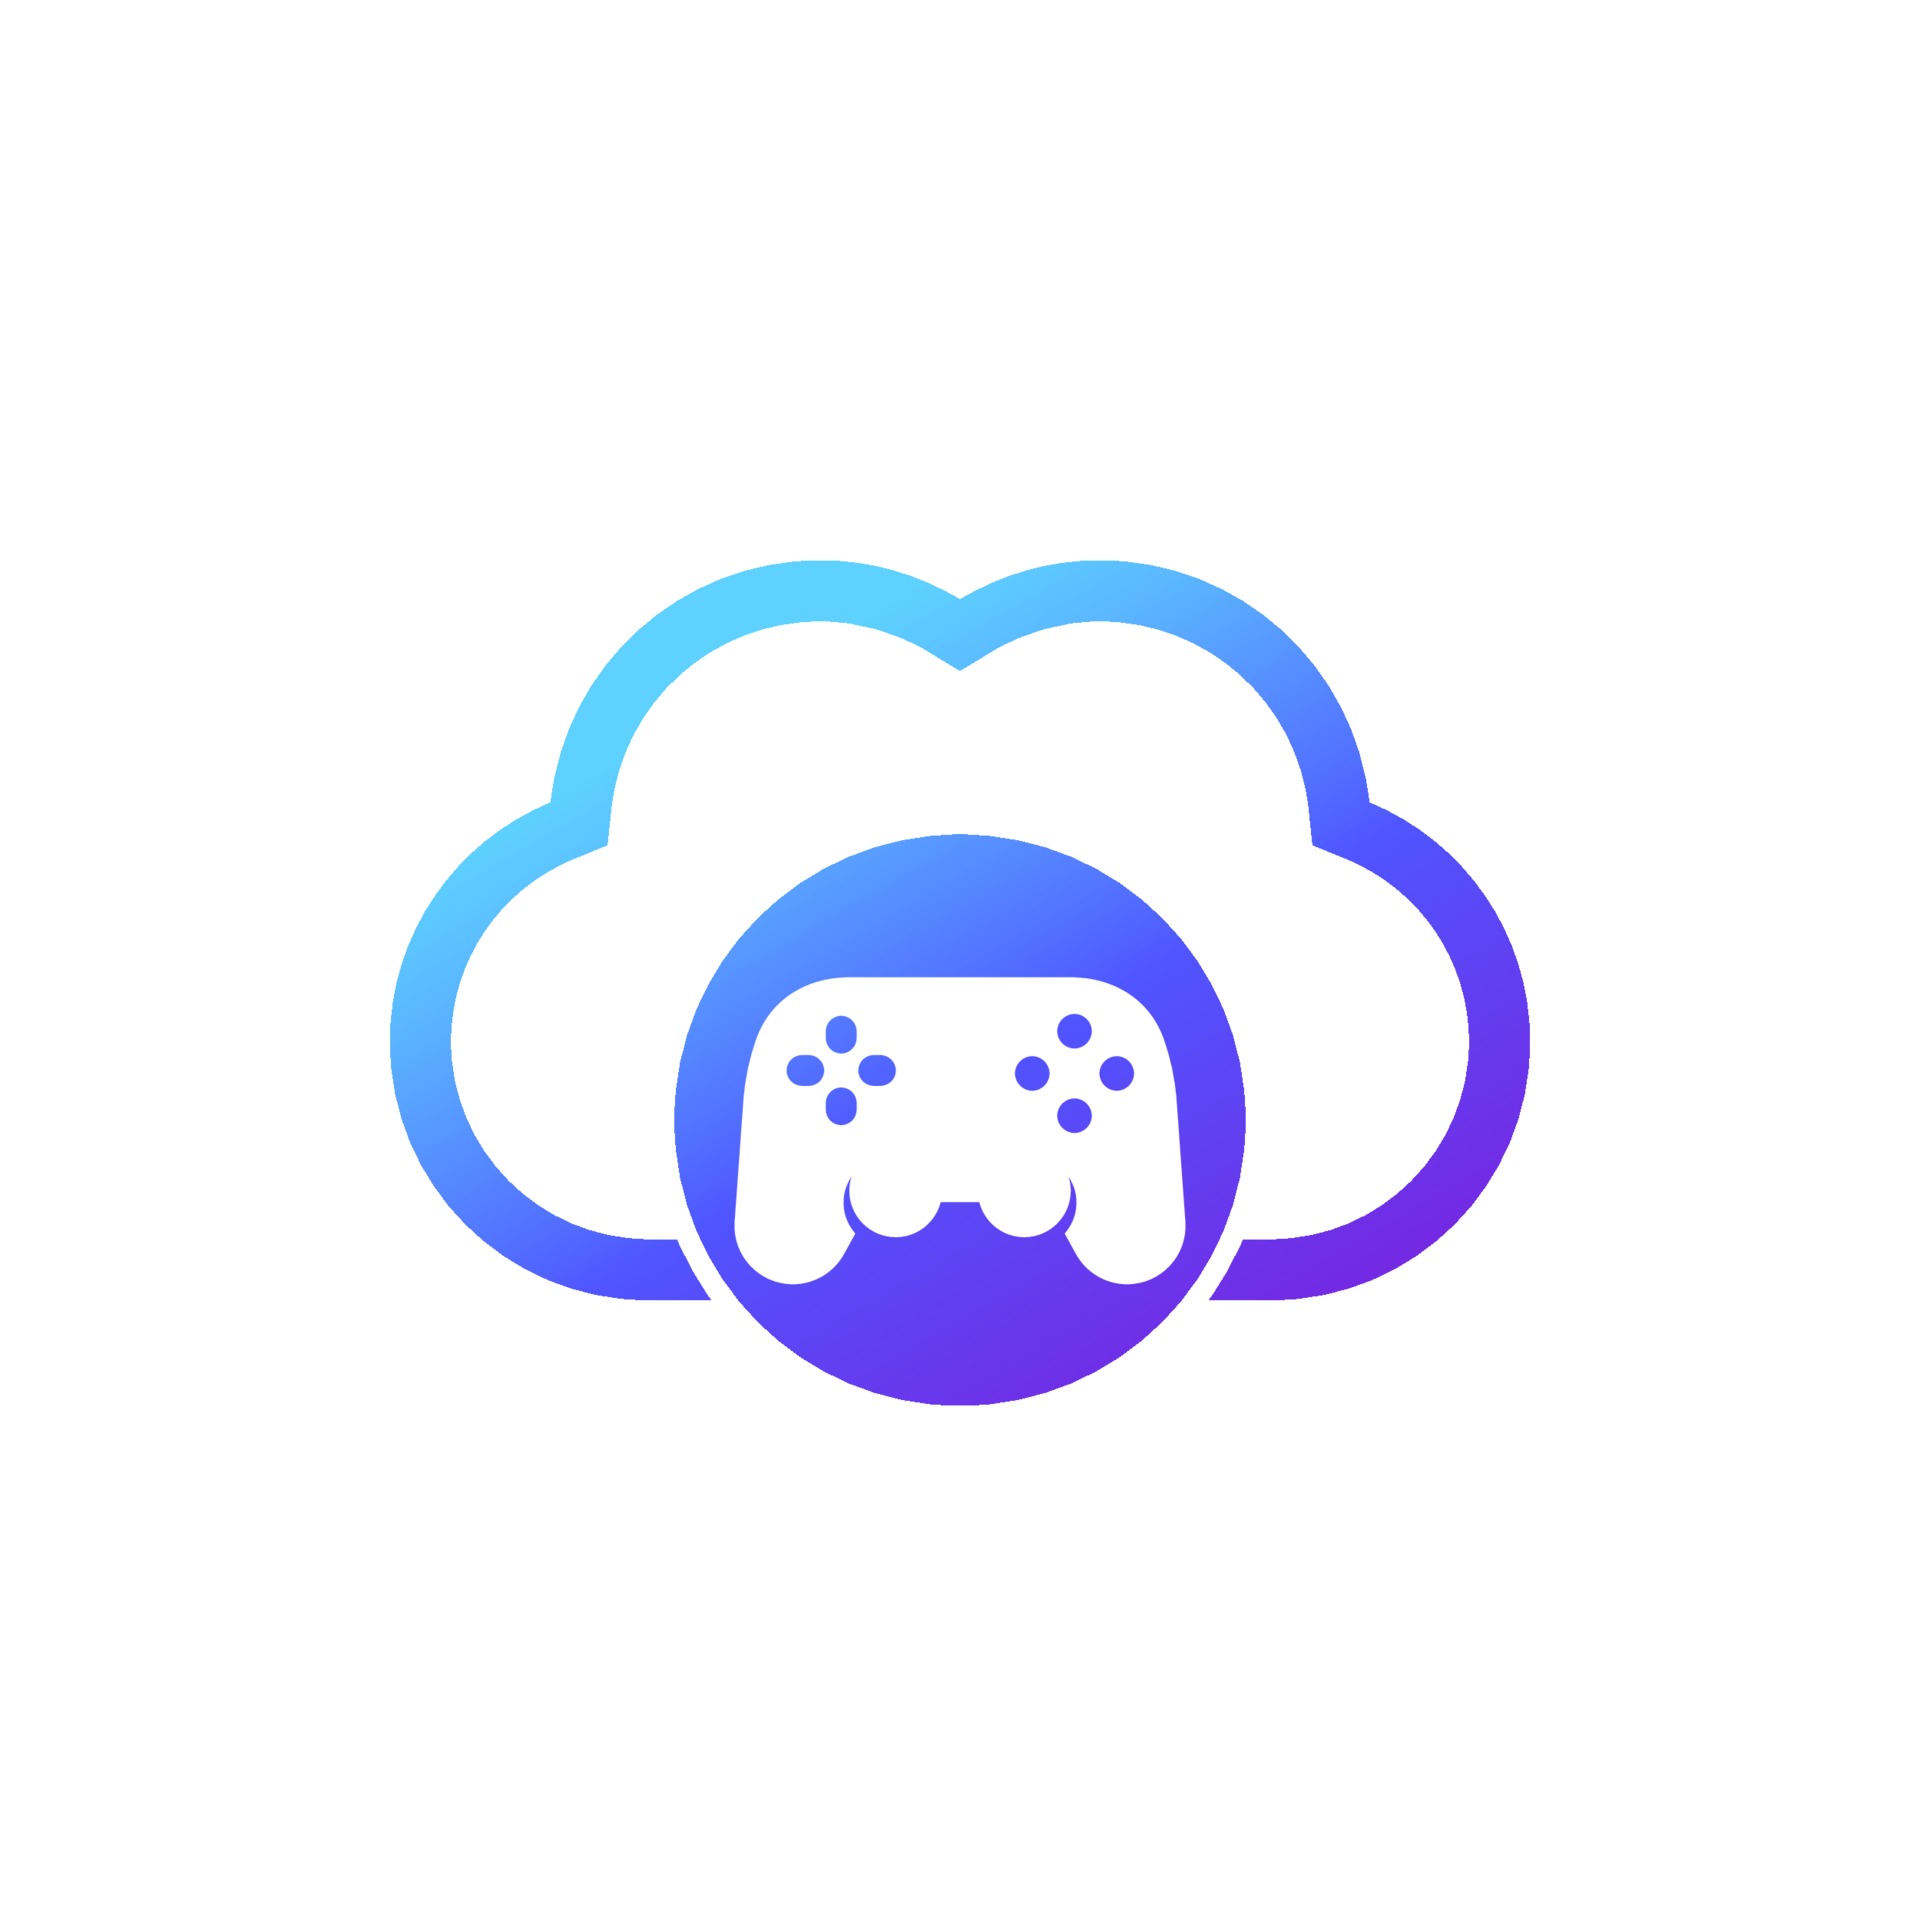 Nuvem - ícones de jogos grátis